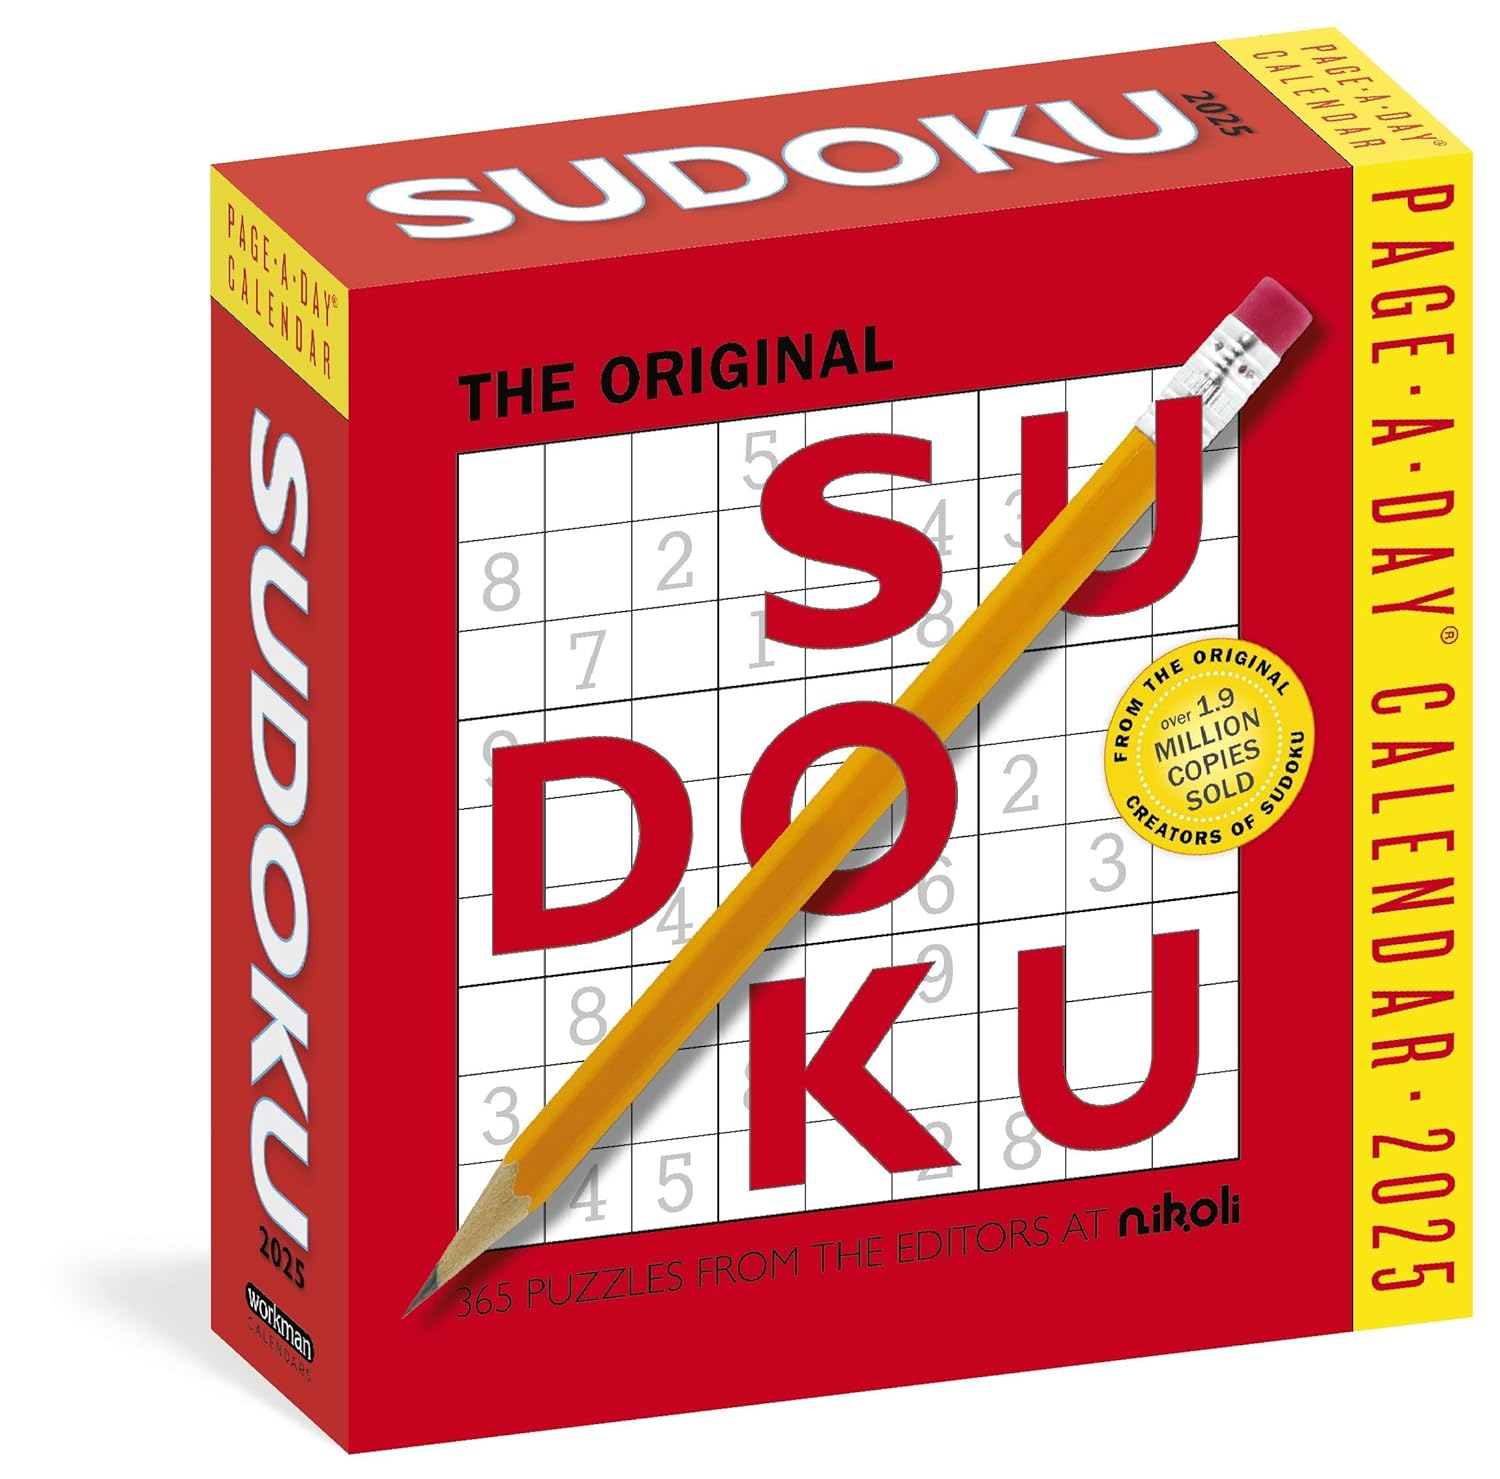 2025 Original Sudoku - Daily Boxed Page-A-Day Calendar